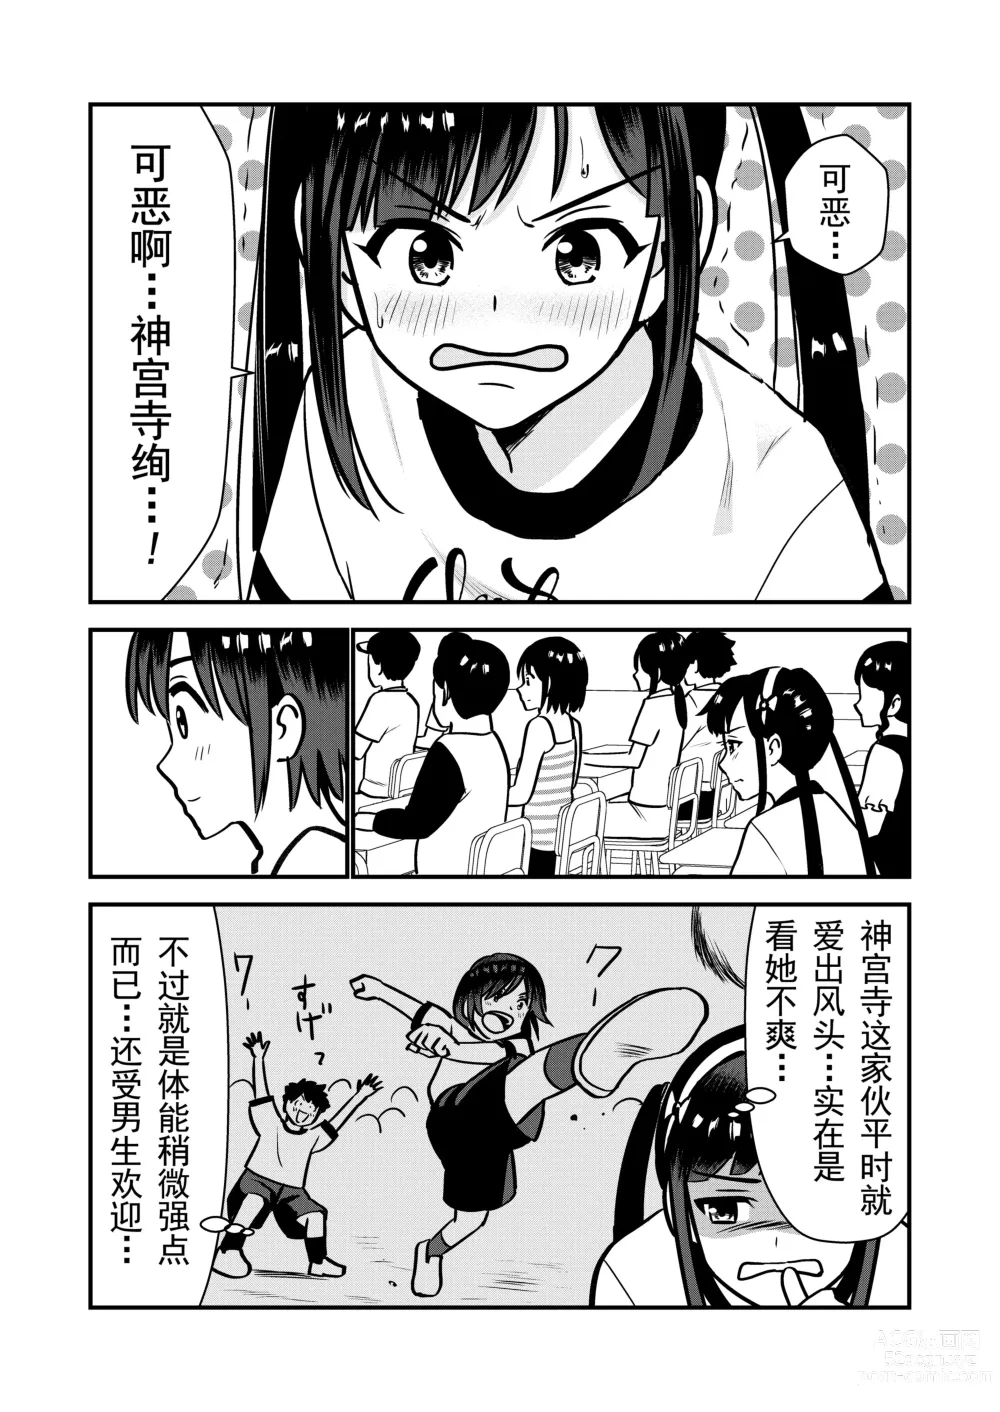 Page 9 of doujinshi 被惩罚后的当天,下半身禁止穿衣服的学校